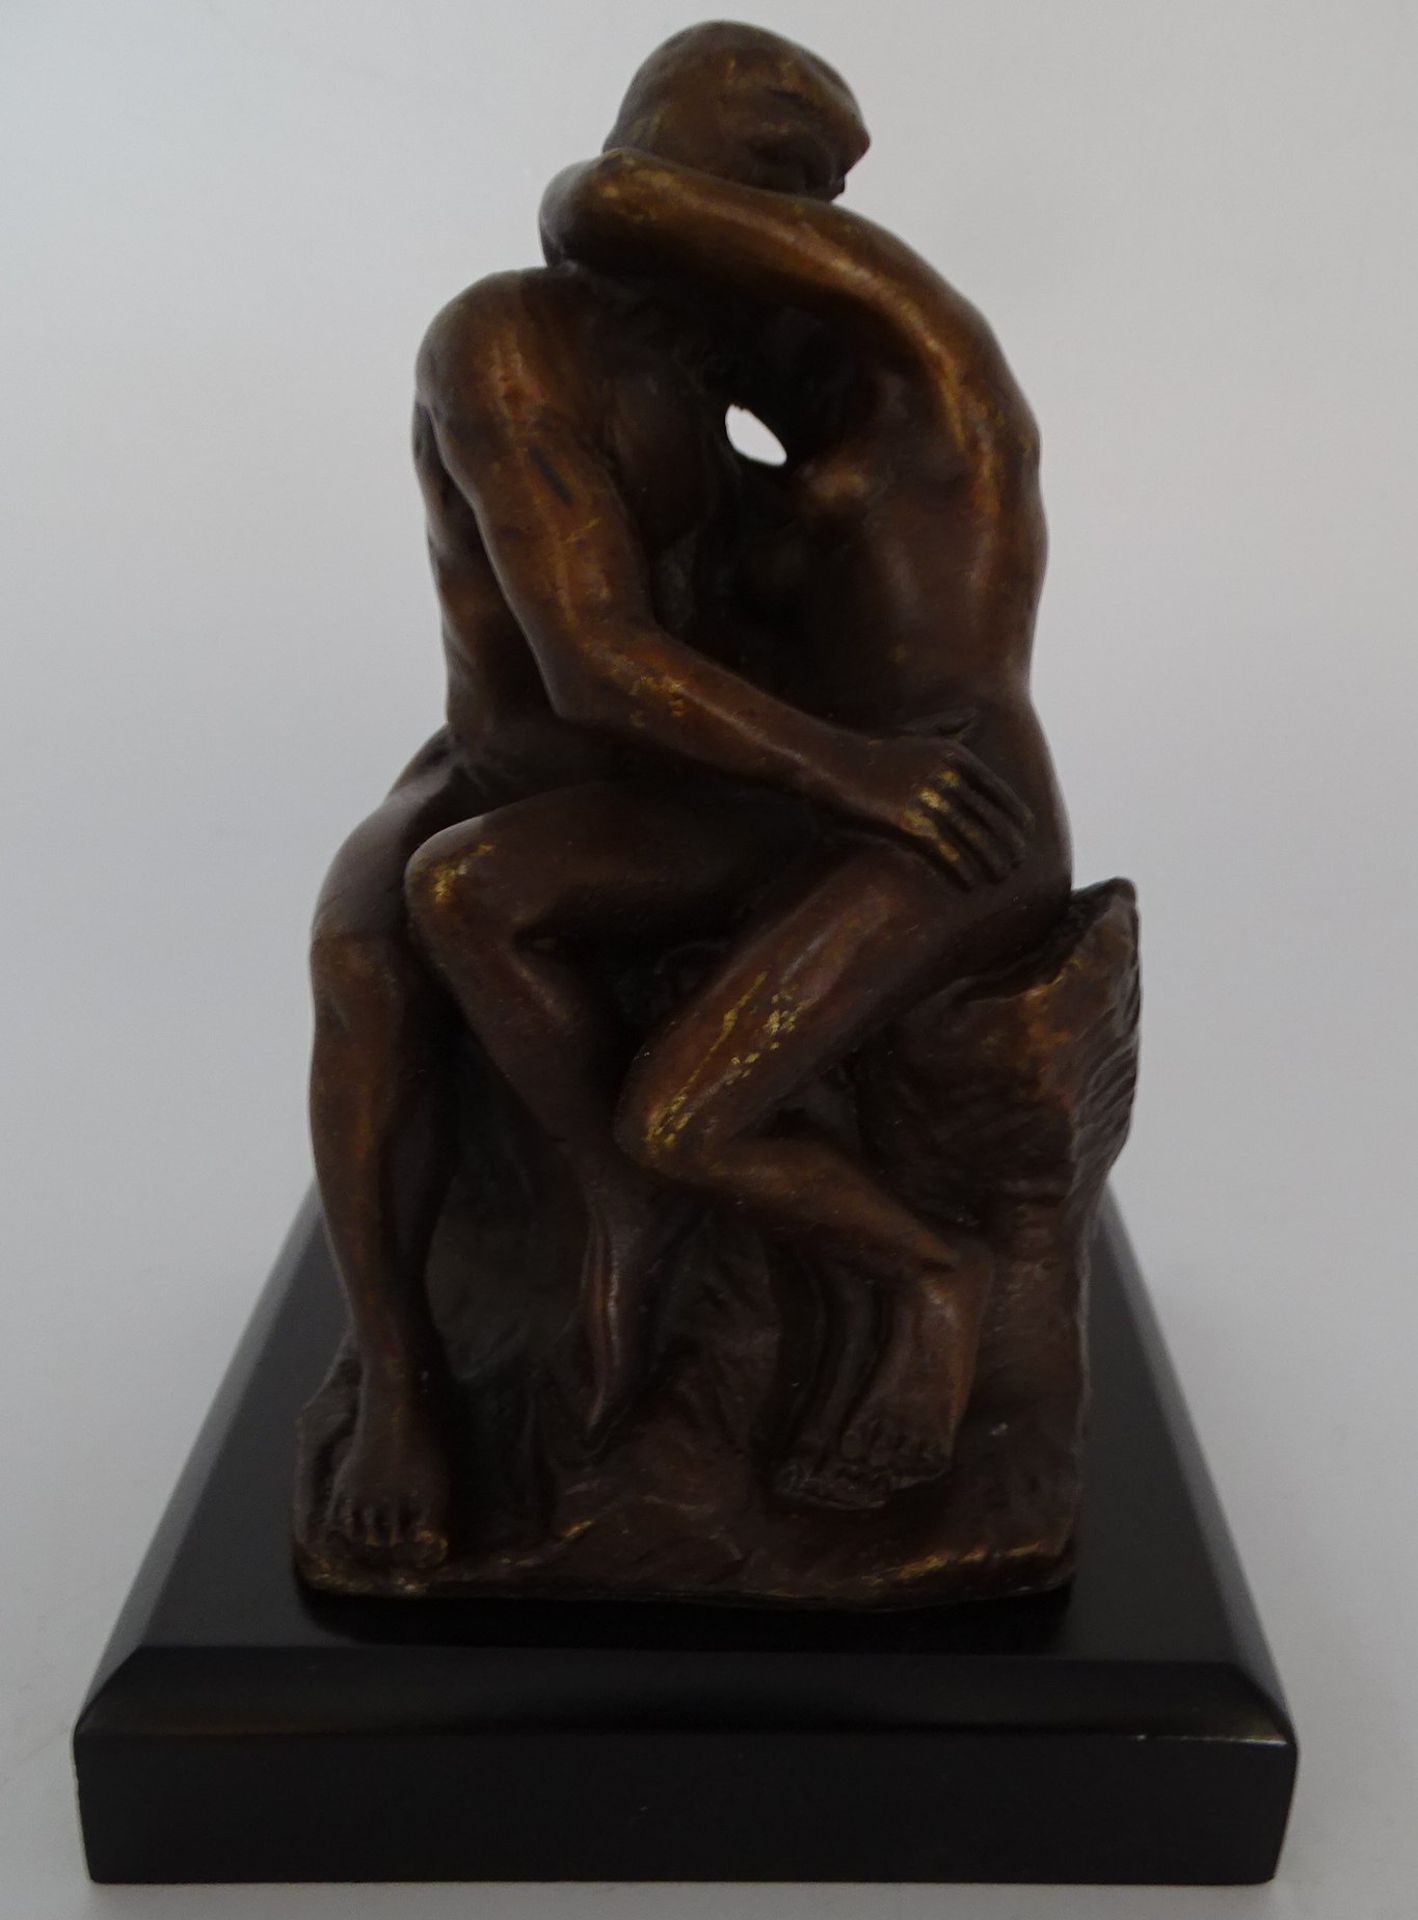 nach Rodin "Der Kuss" kl. Bronze in orig. Kasten, H-11 cm, - Image 2 of 6